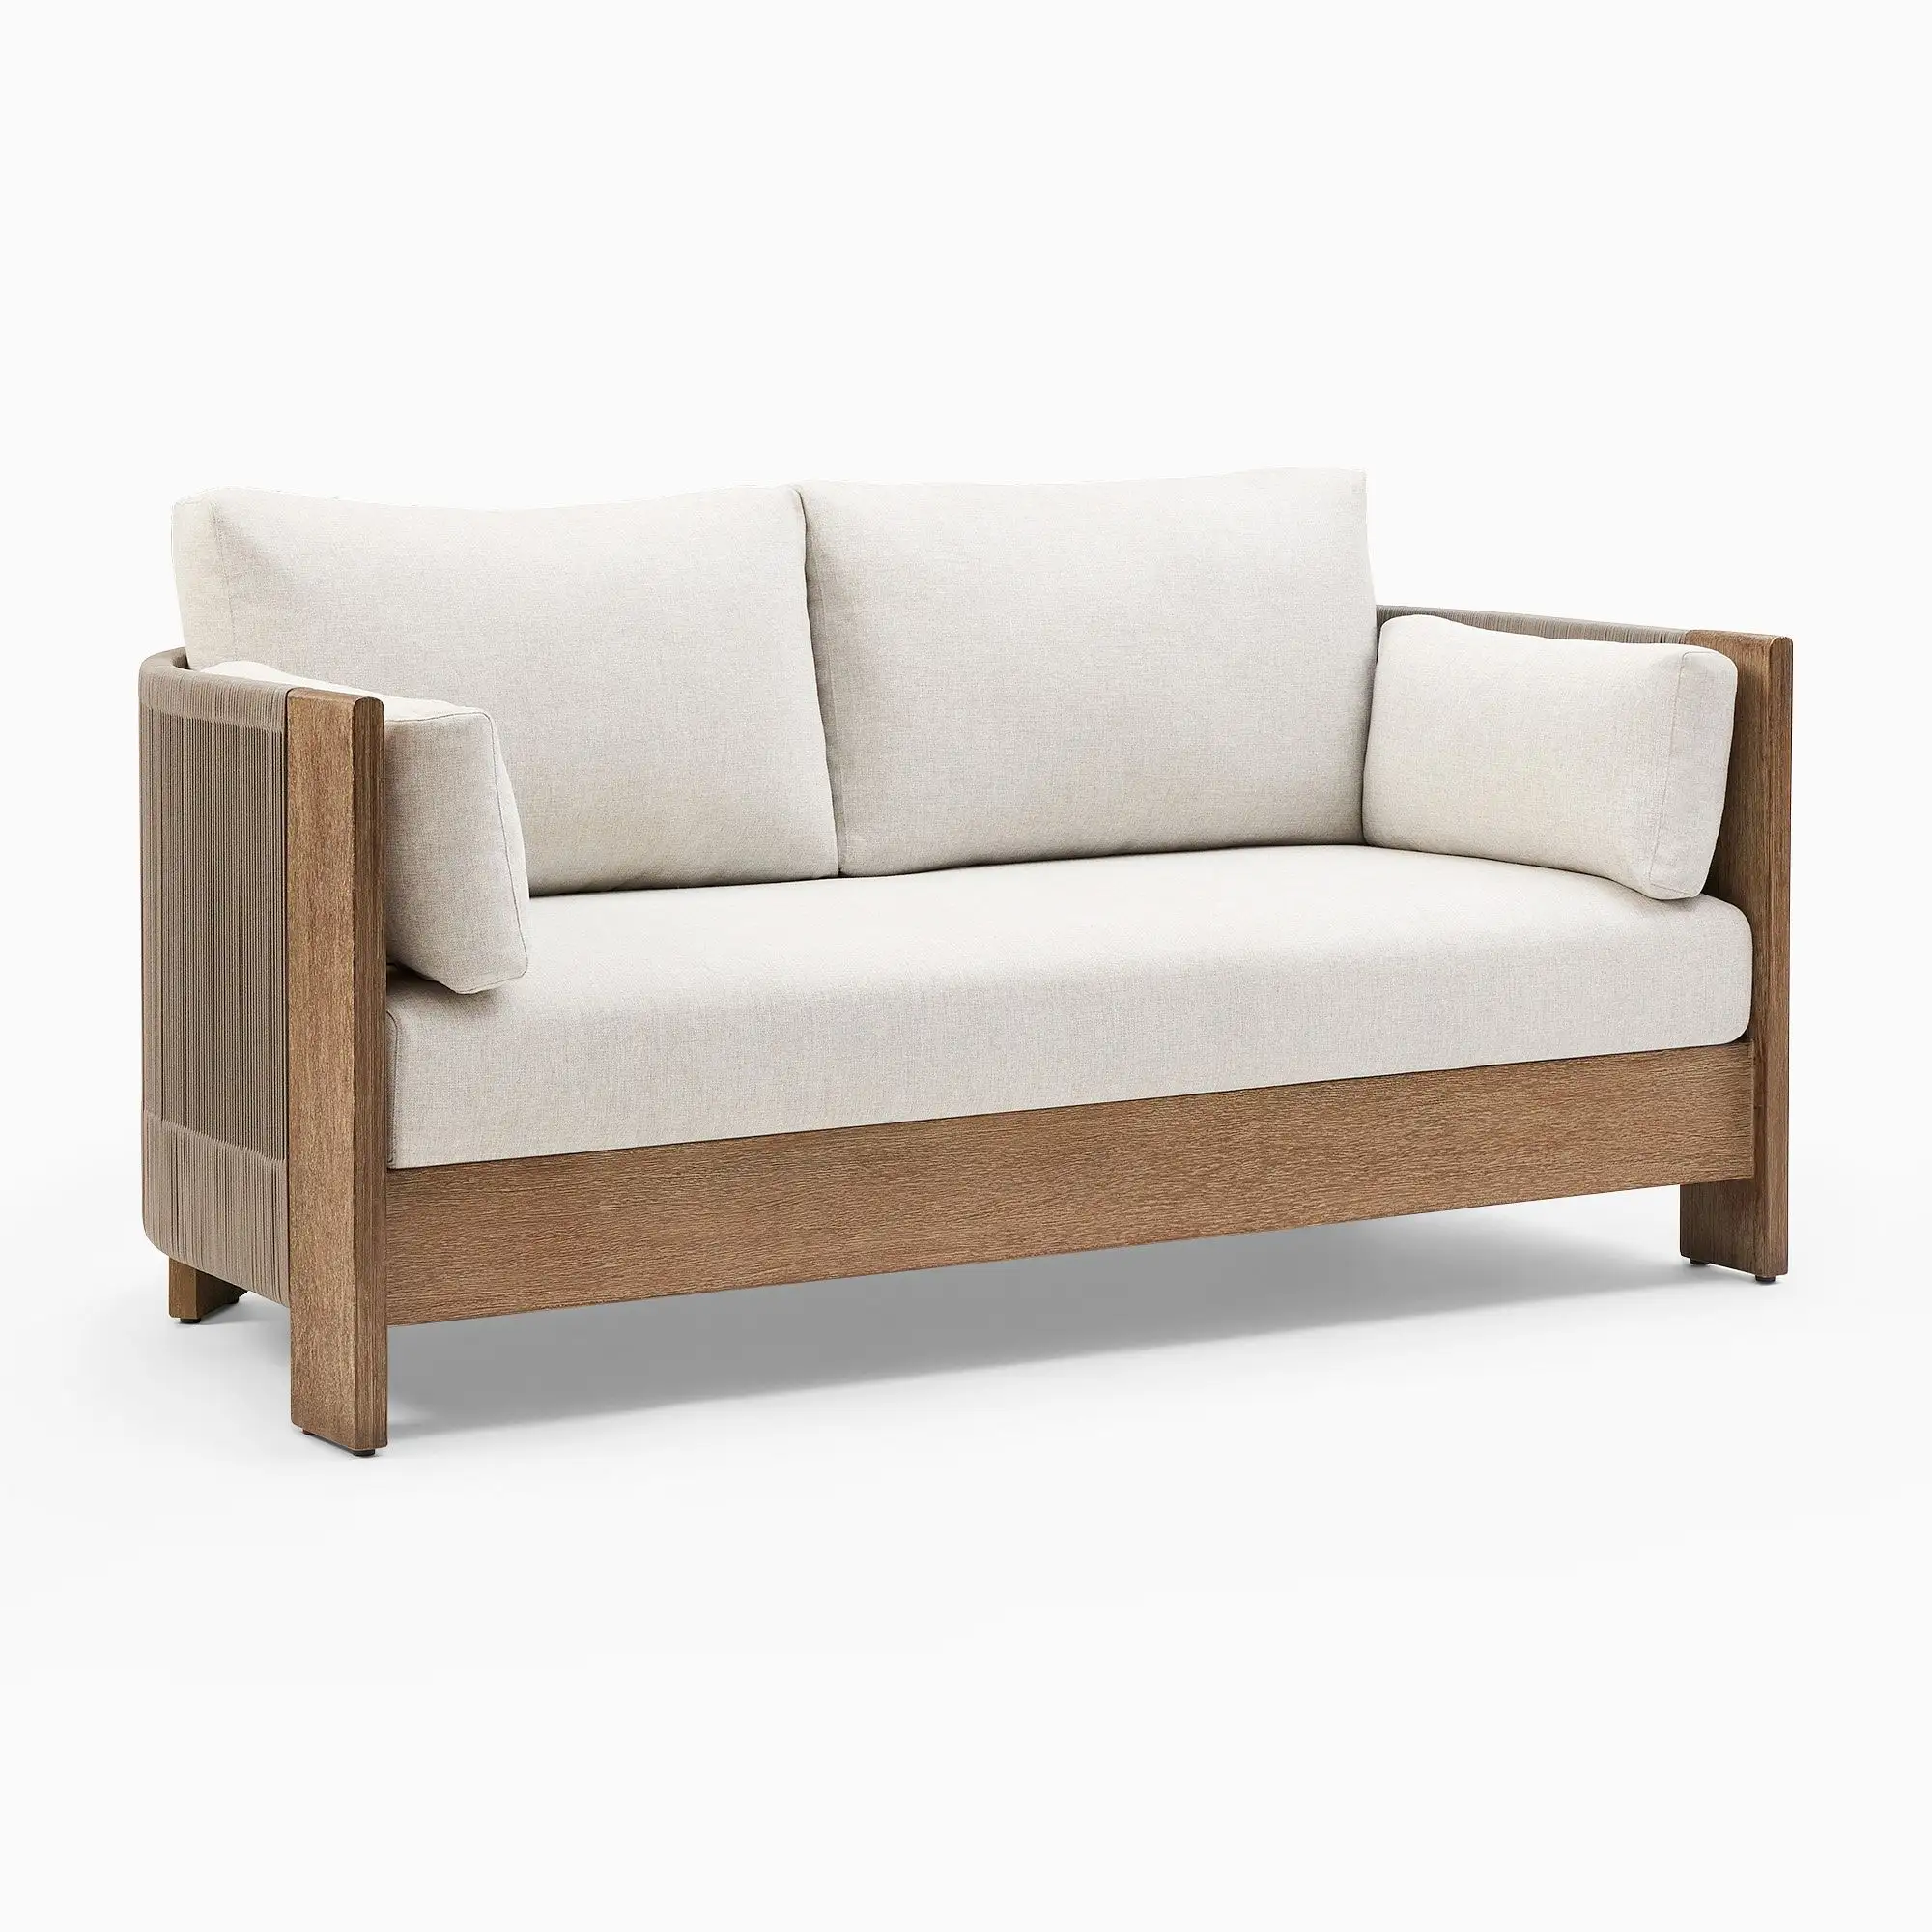 Cadeira de sofá portuária durável e confortável, produto de móveis premium de teca e corda originalmente artesanal da Indonésia